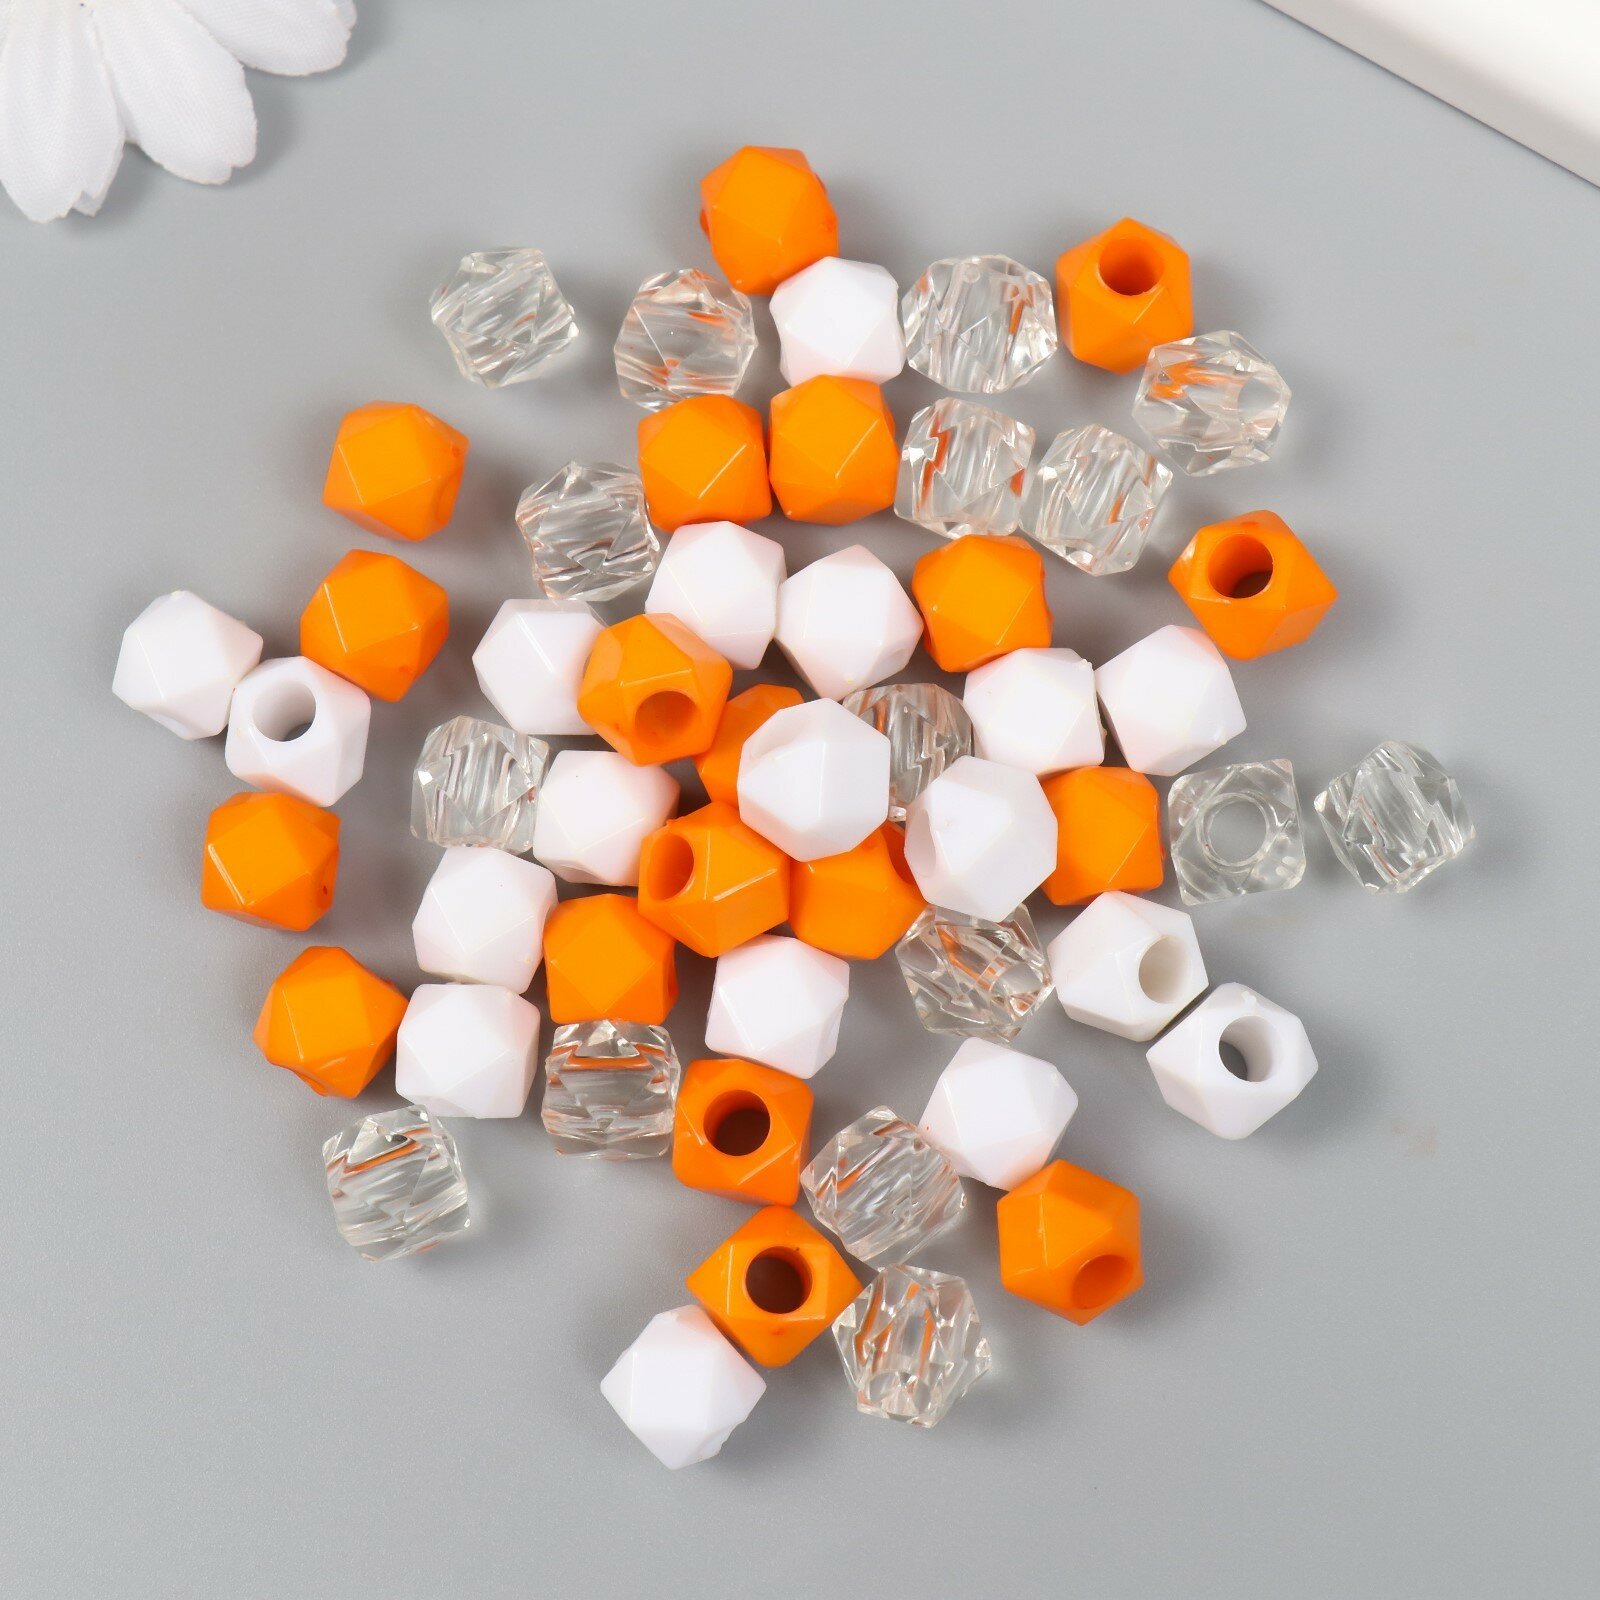 Бусины пластик "Кристалл многогранник. Оранж, белый, прозрачный" набор 30 гр 1х1х1 см (1шт.)